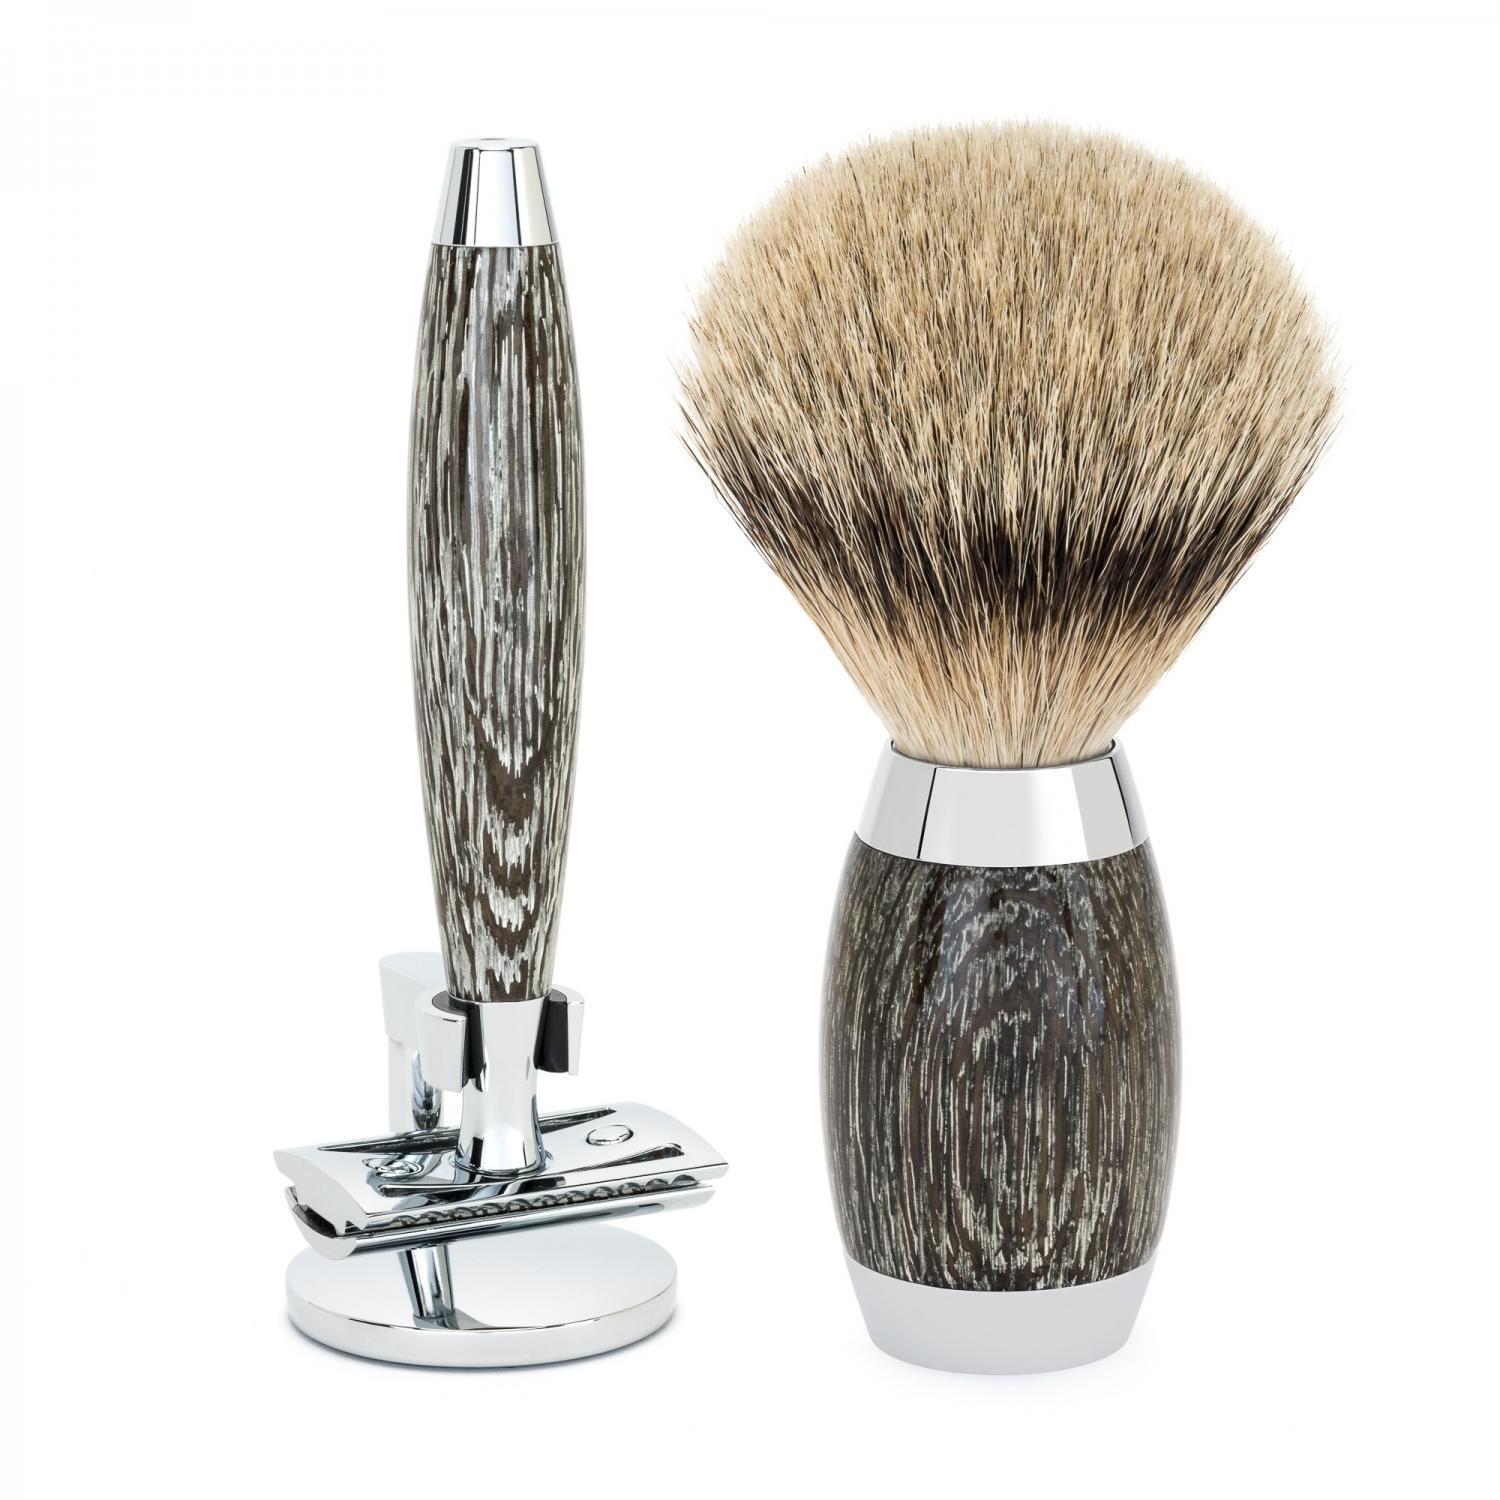 MÜHLE Edition Ancient Oak & Silver Juego de afeitado de 3 piezas Silvertip Badger y maquinilla de afeitar de seguridad